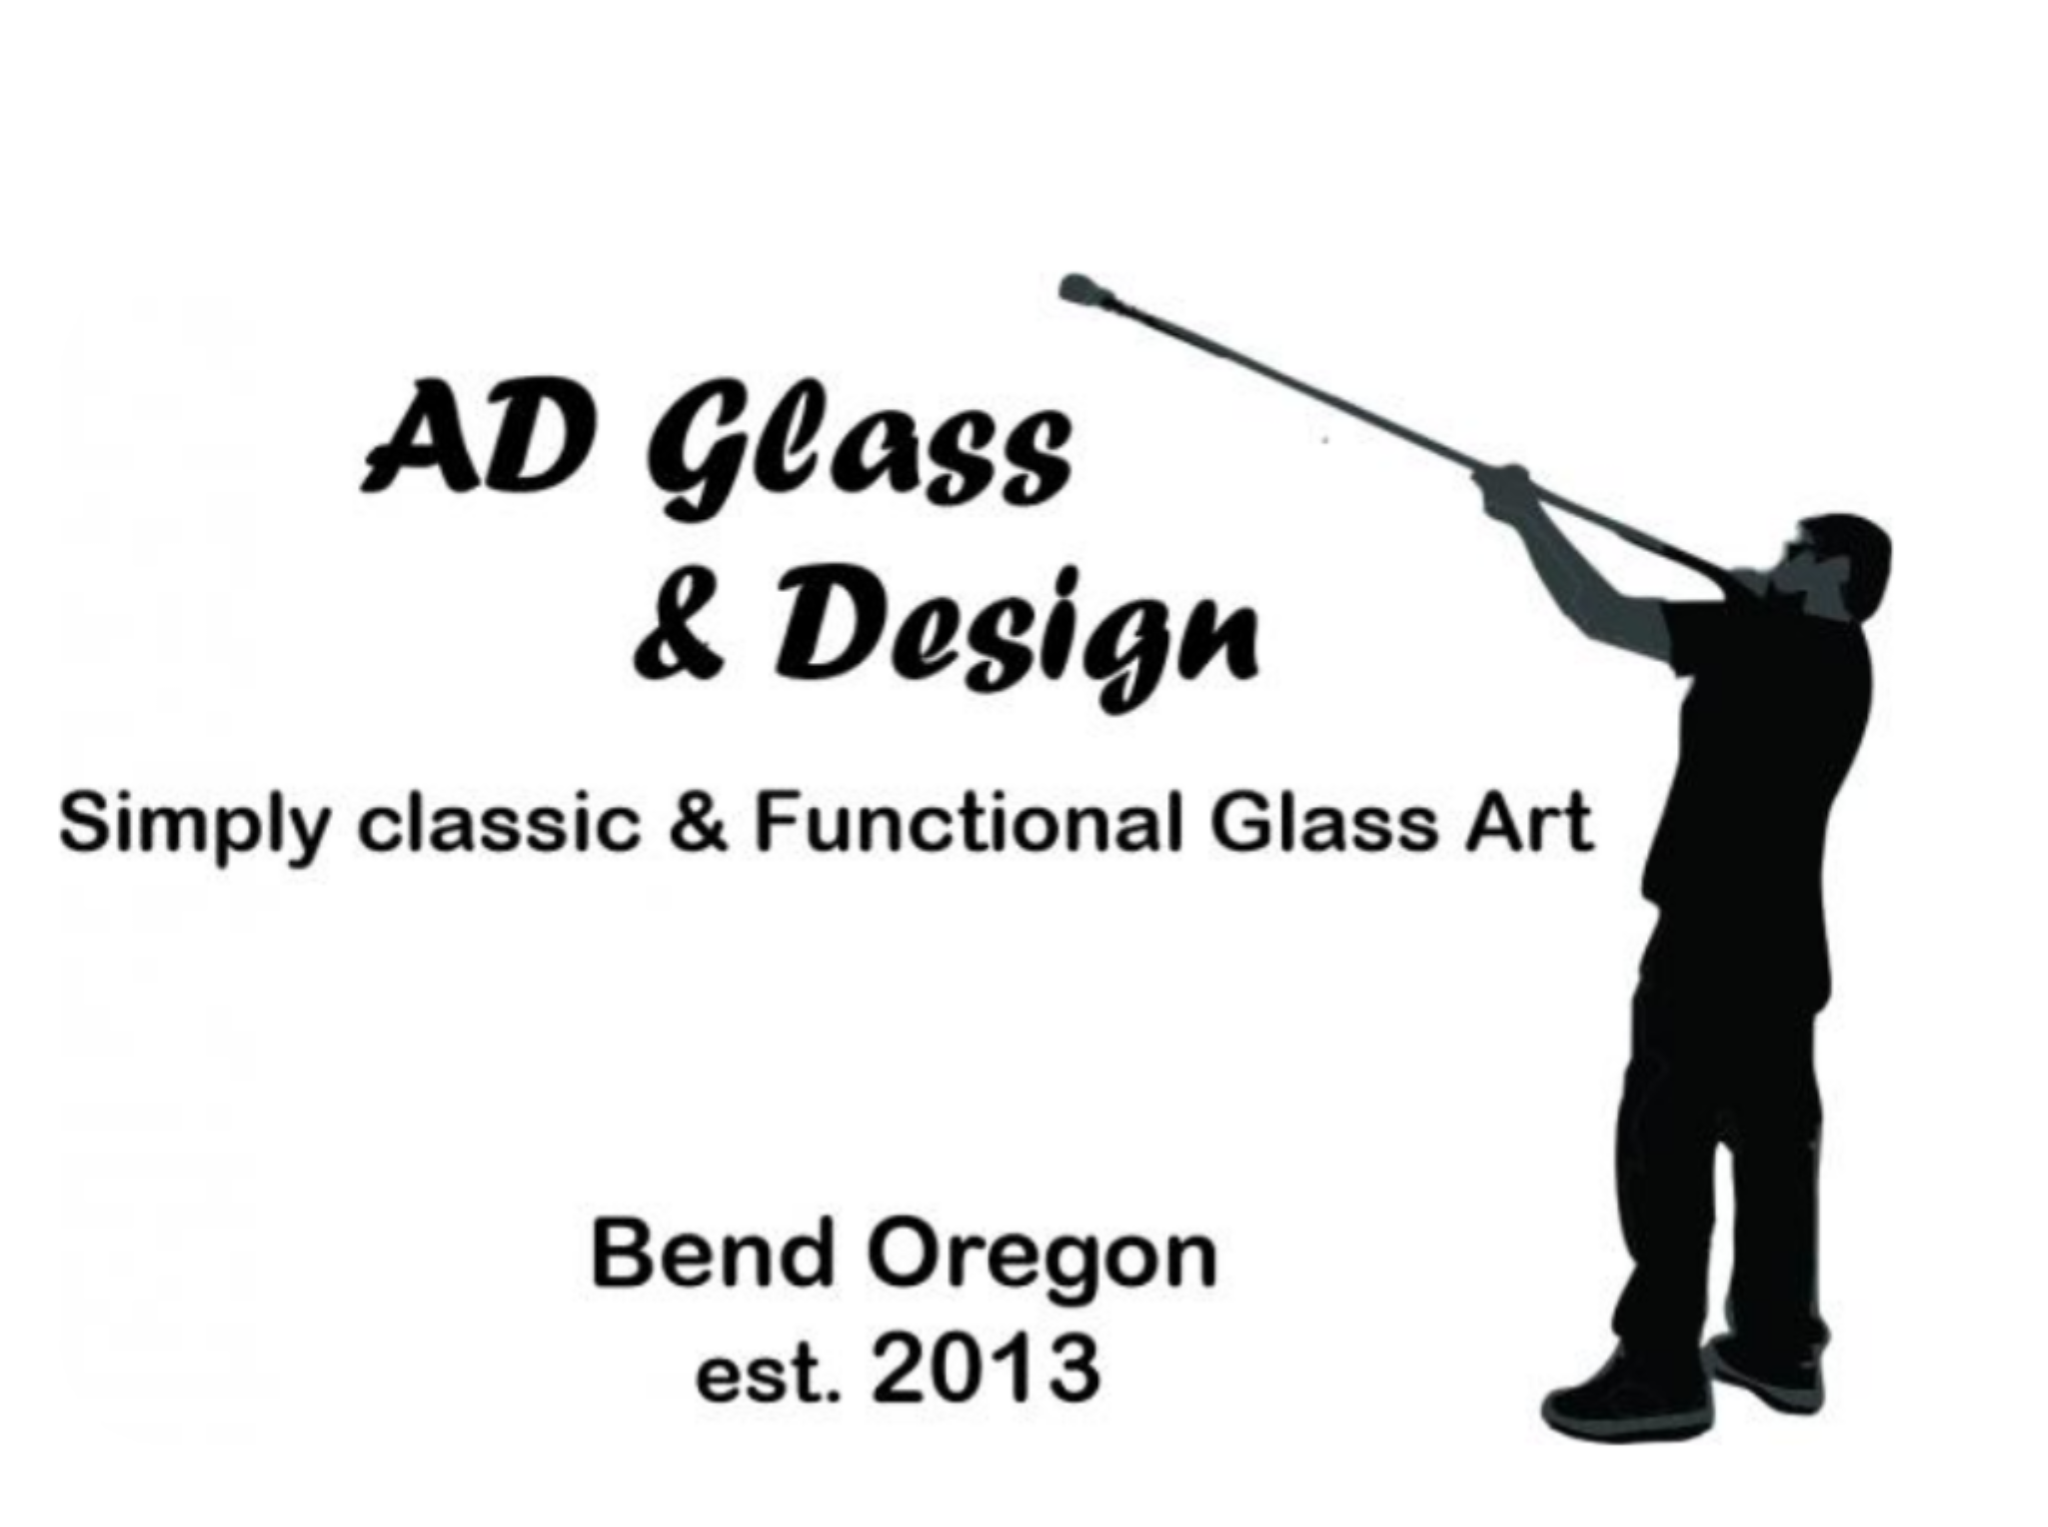 A&D Glass